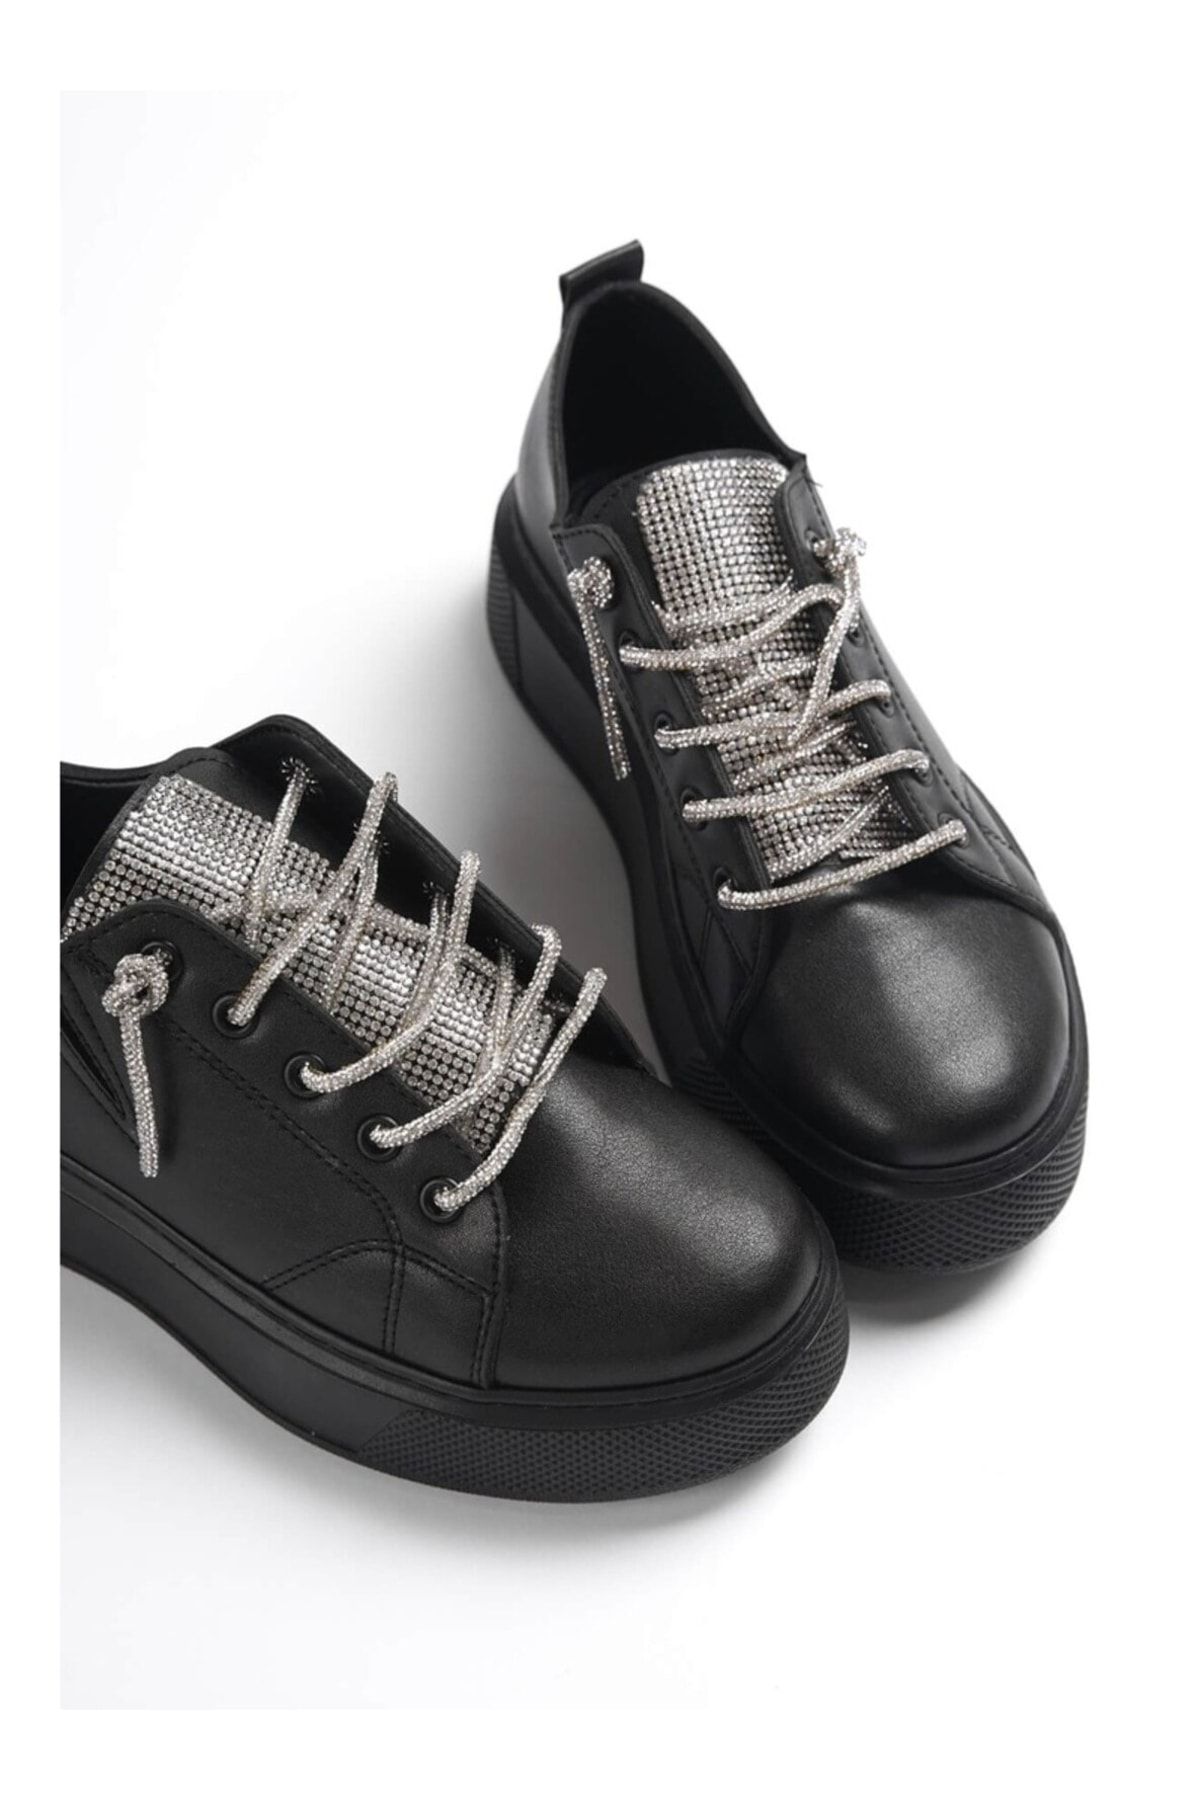 StWenn Lekya Ayakkabı Kadın Taşlı Siyah Sneaker Yüksek Taban Bağcıklı Taş Detaylı Spor Ayakkabı Full Siyah